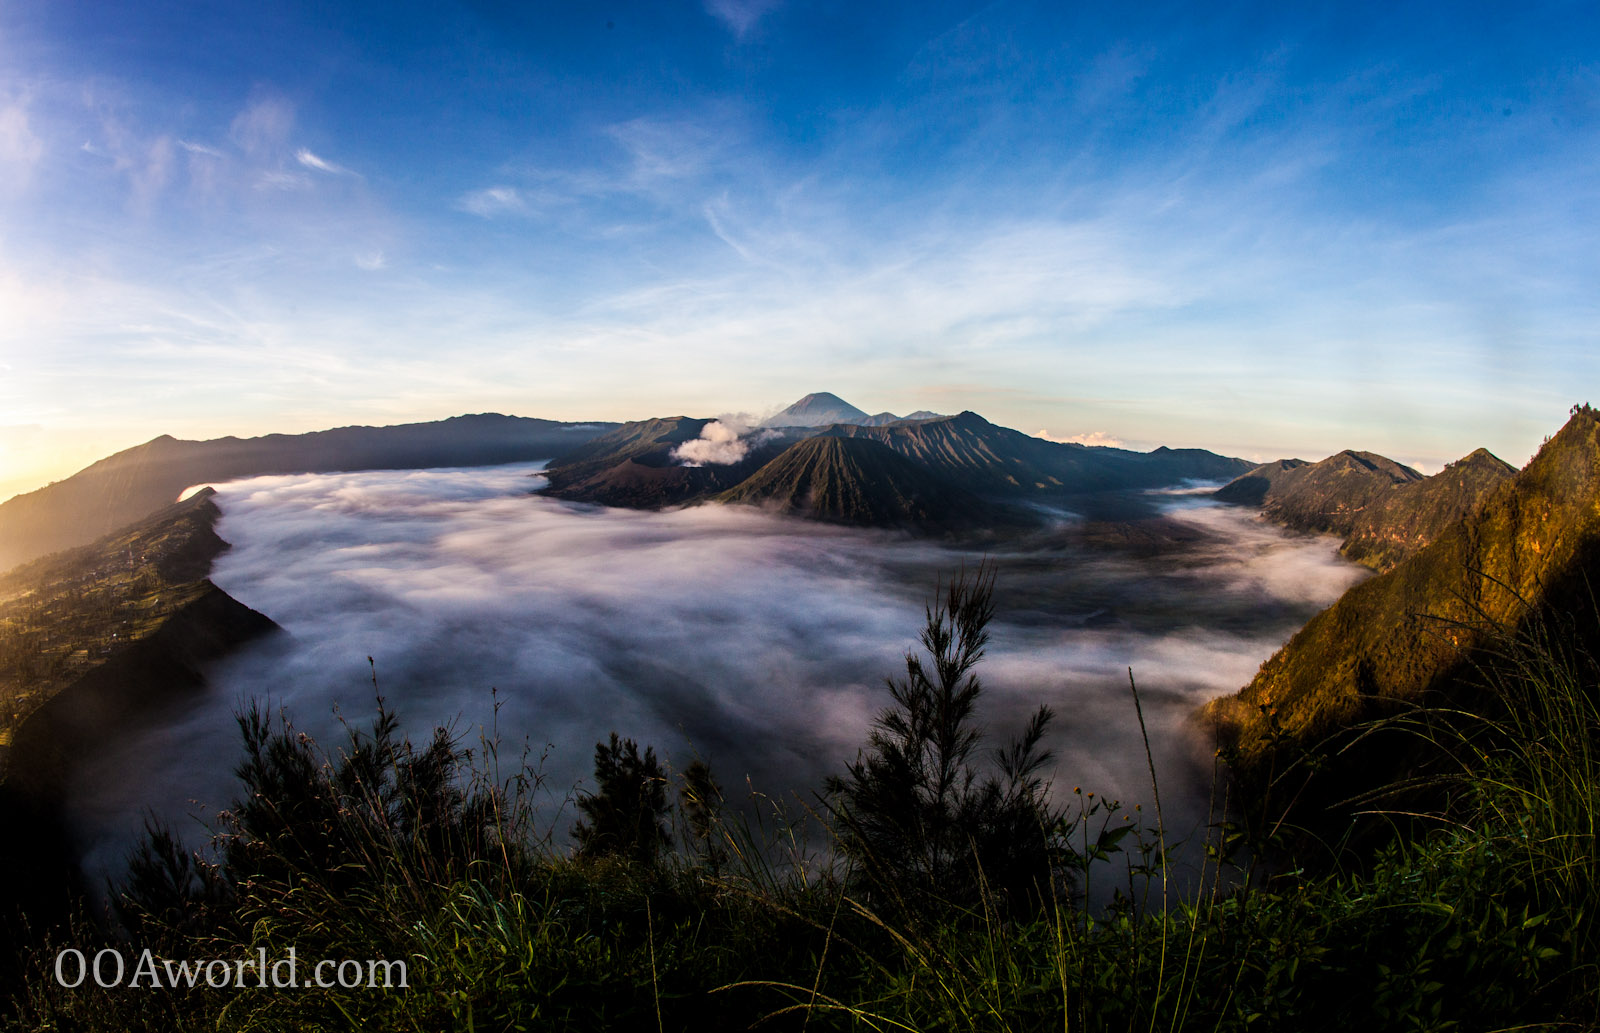 Mount Bromo, Indonesia - Travel Tips - OOAworld